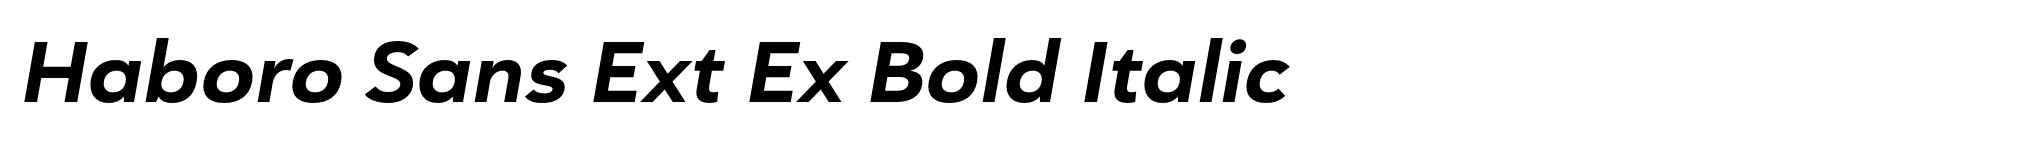 Haboro Sans Ext Ex Bold Italic image